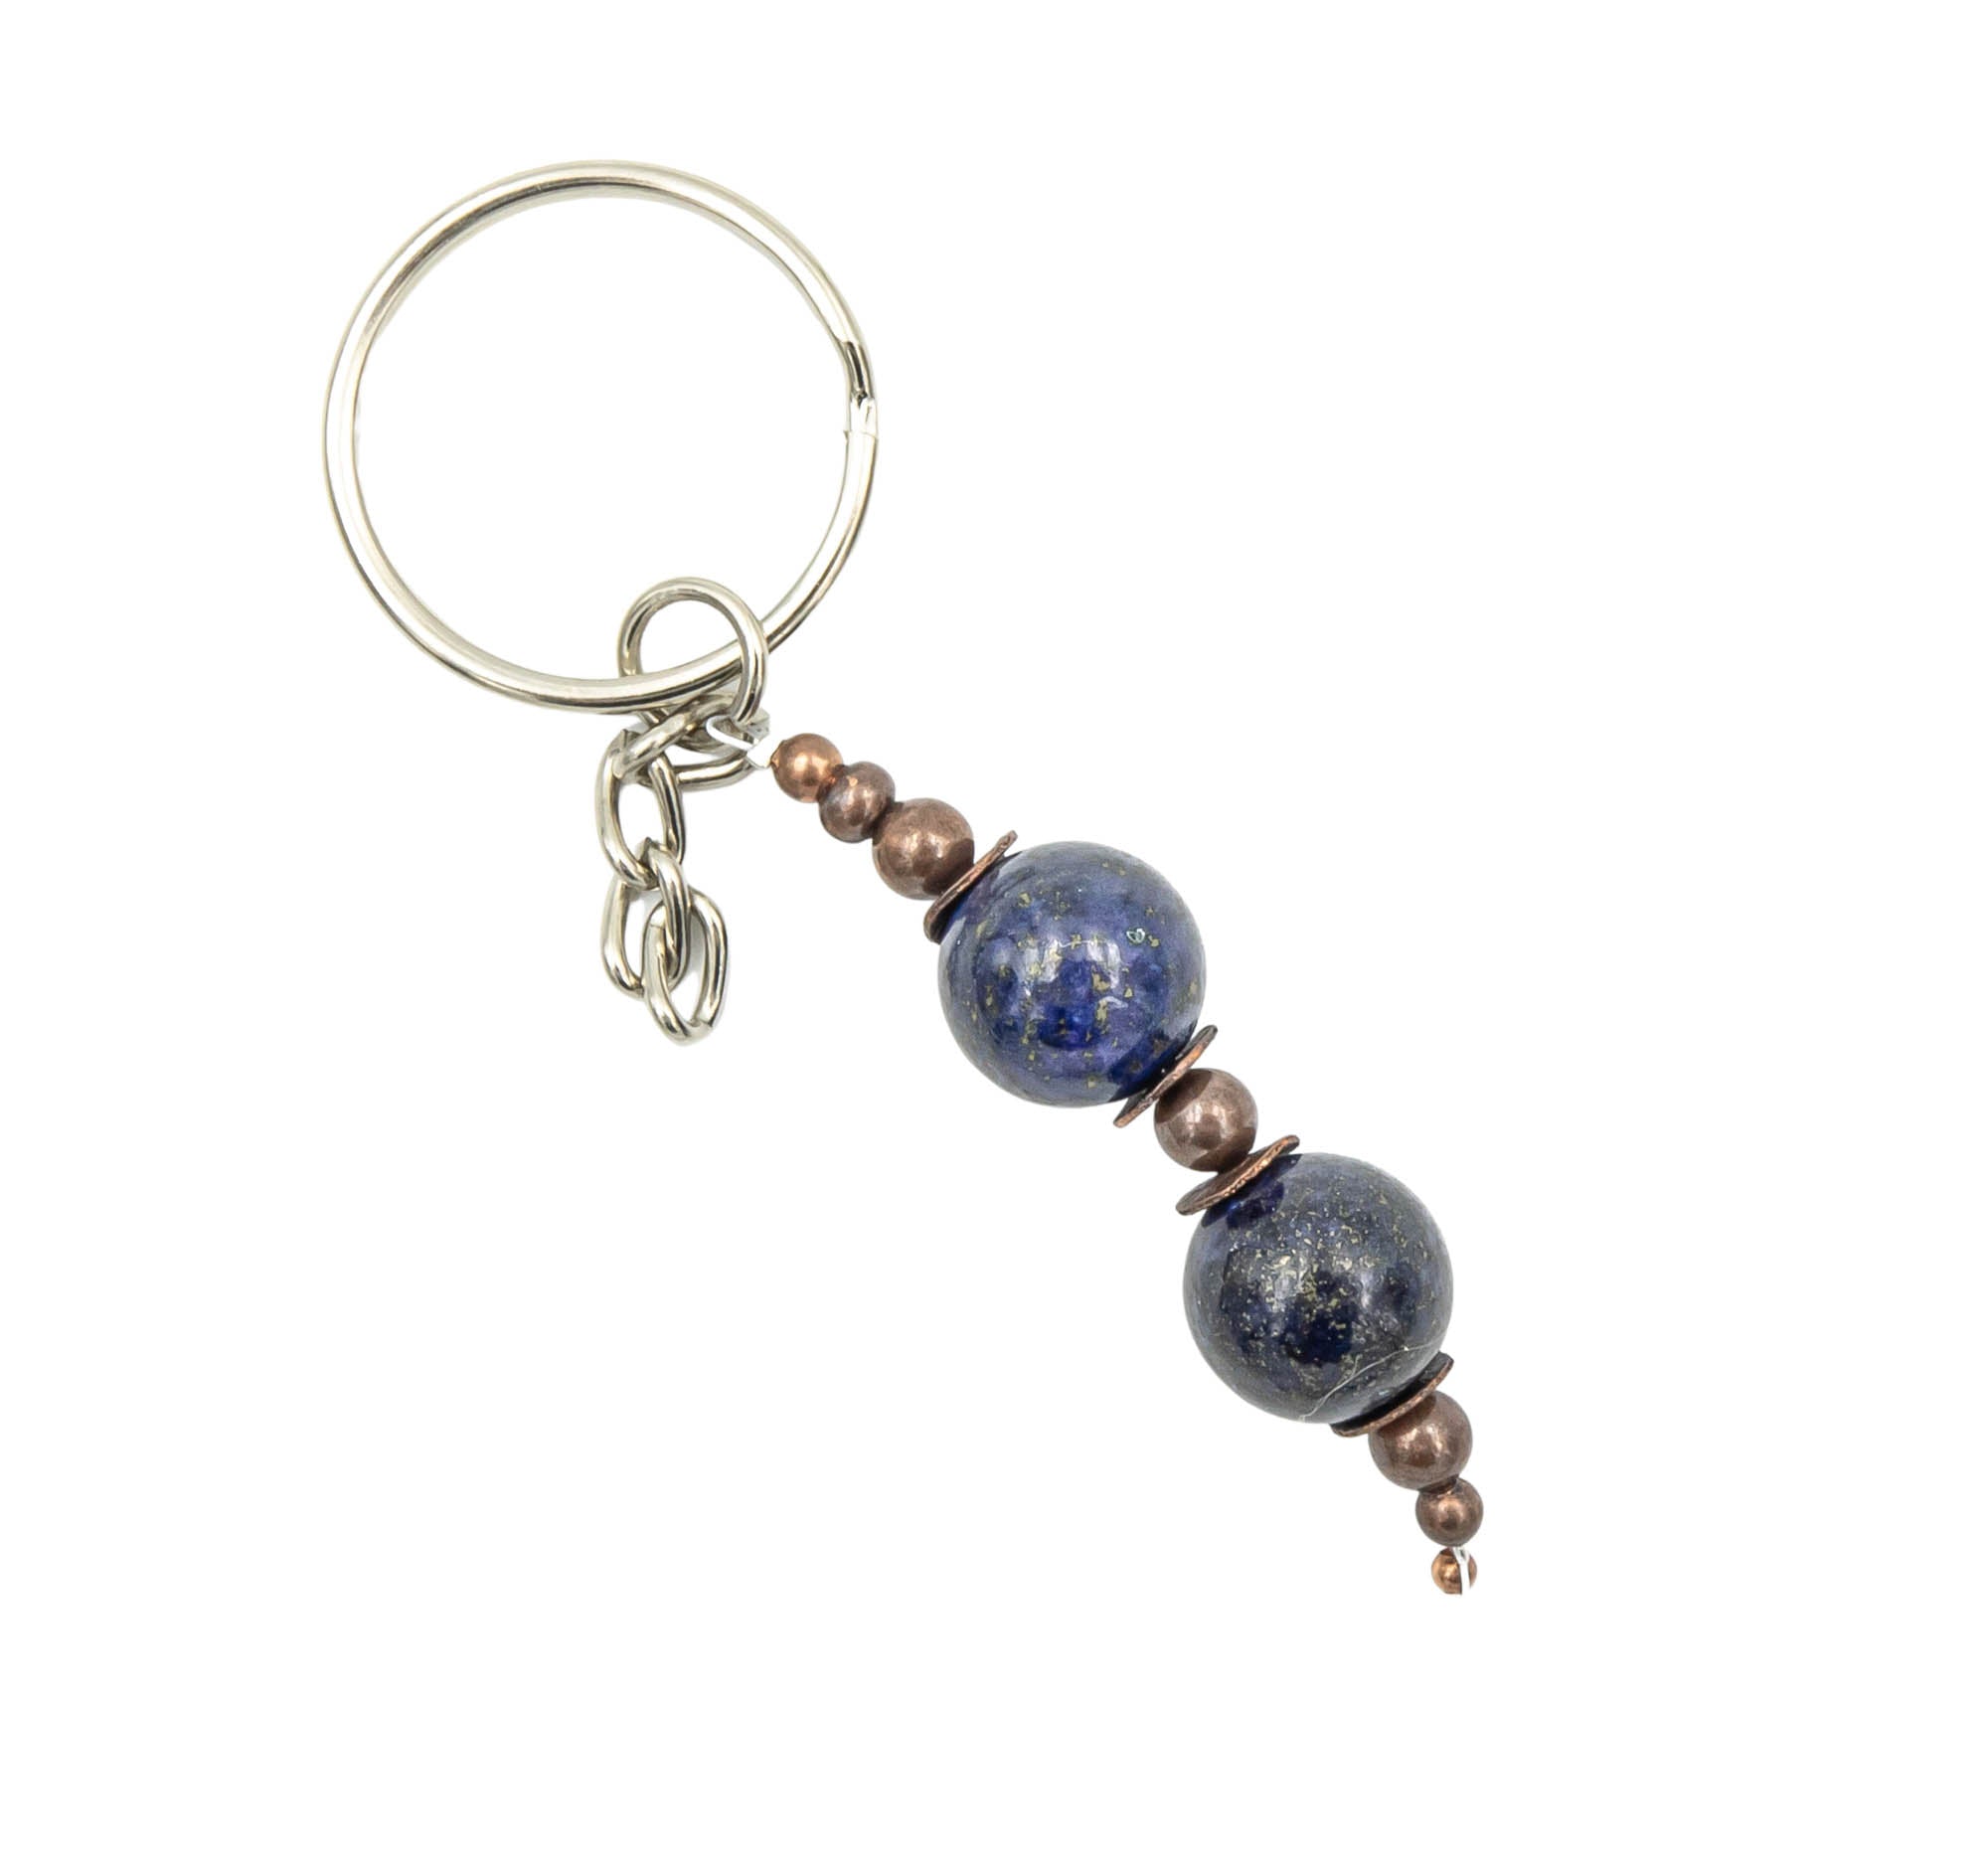 Silver keychain with lapis lazuli.